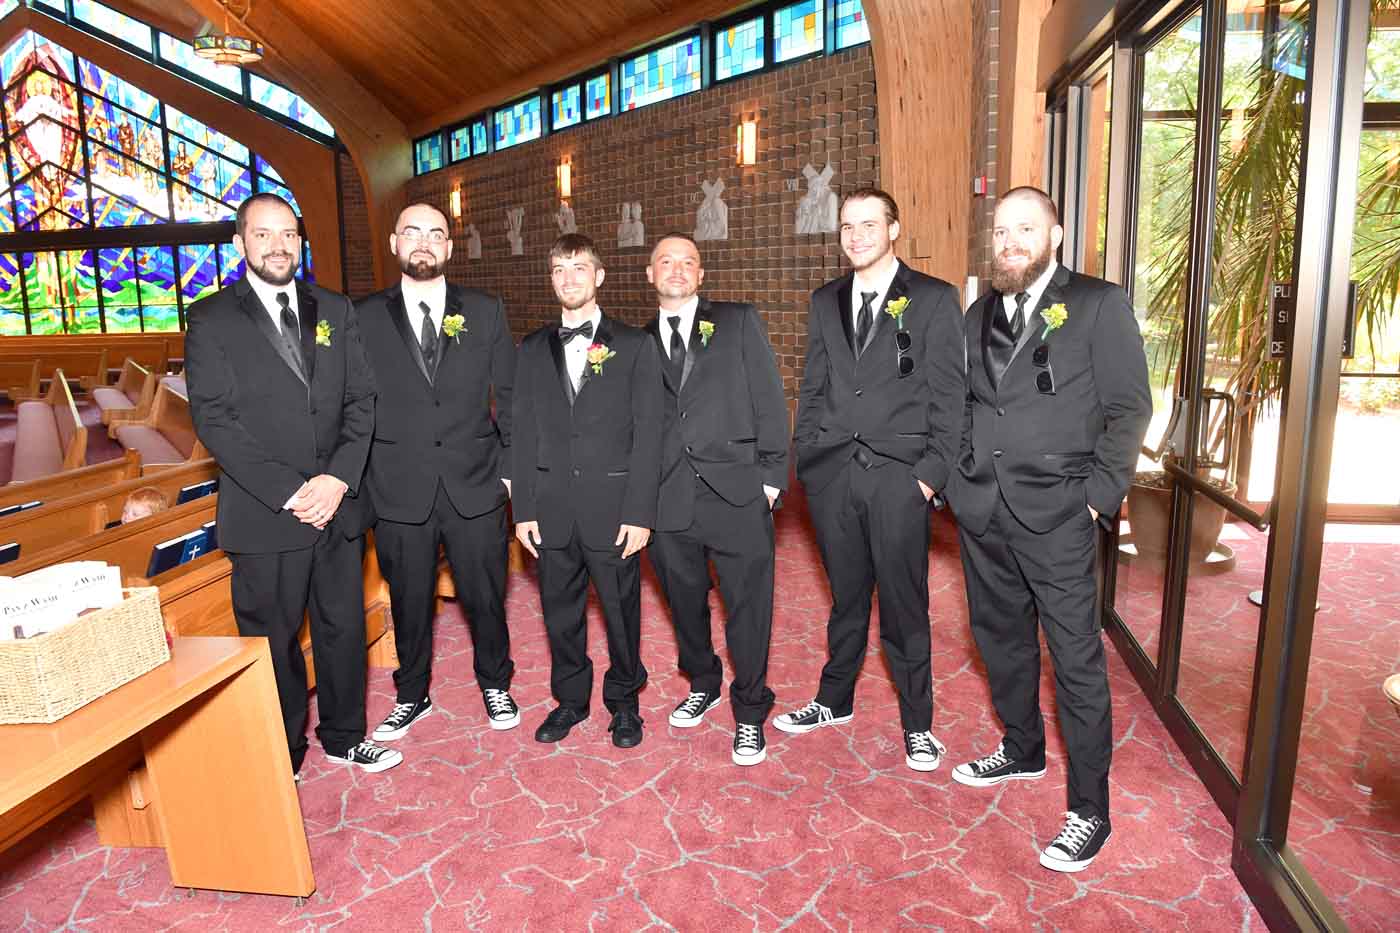 Groom and 5 groomsmen posing in church